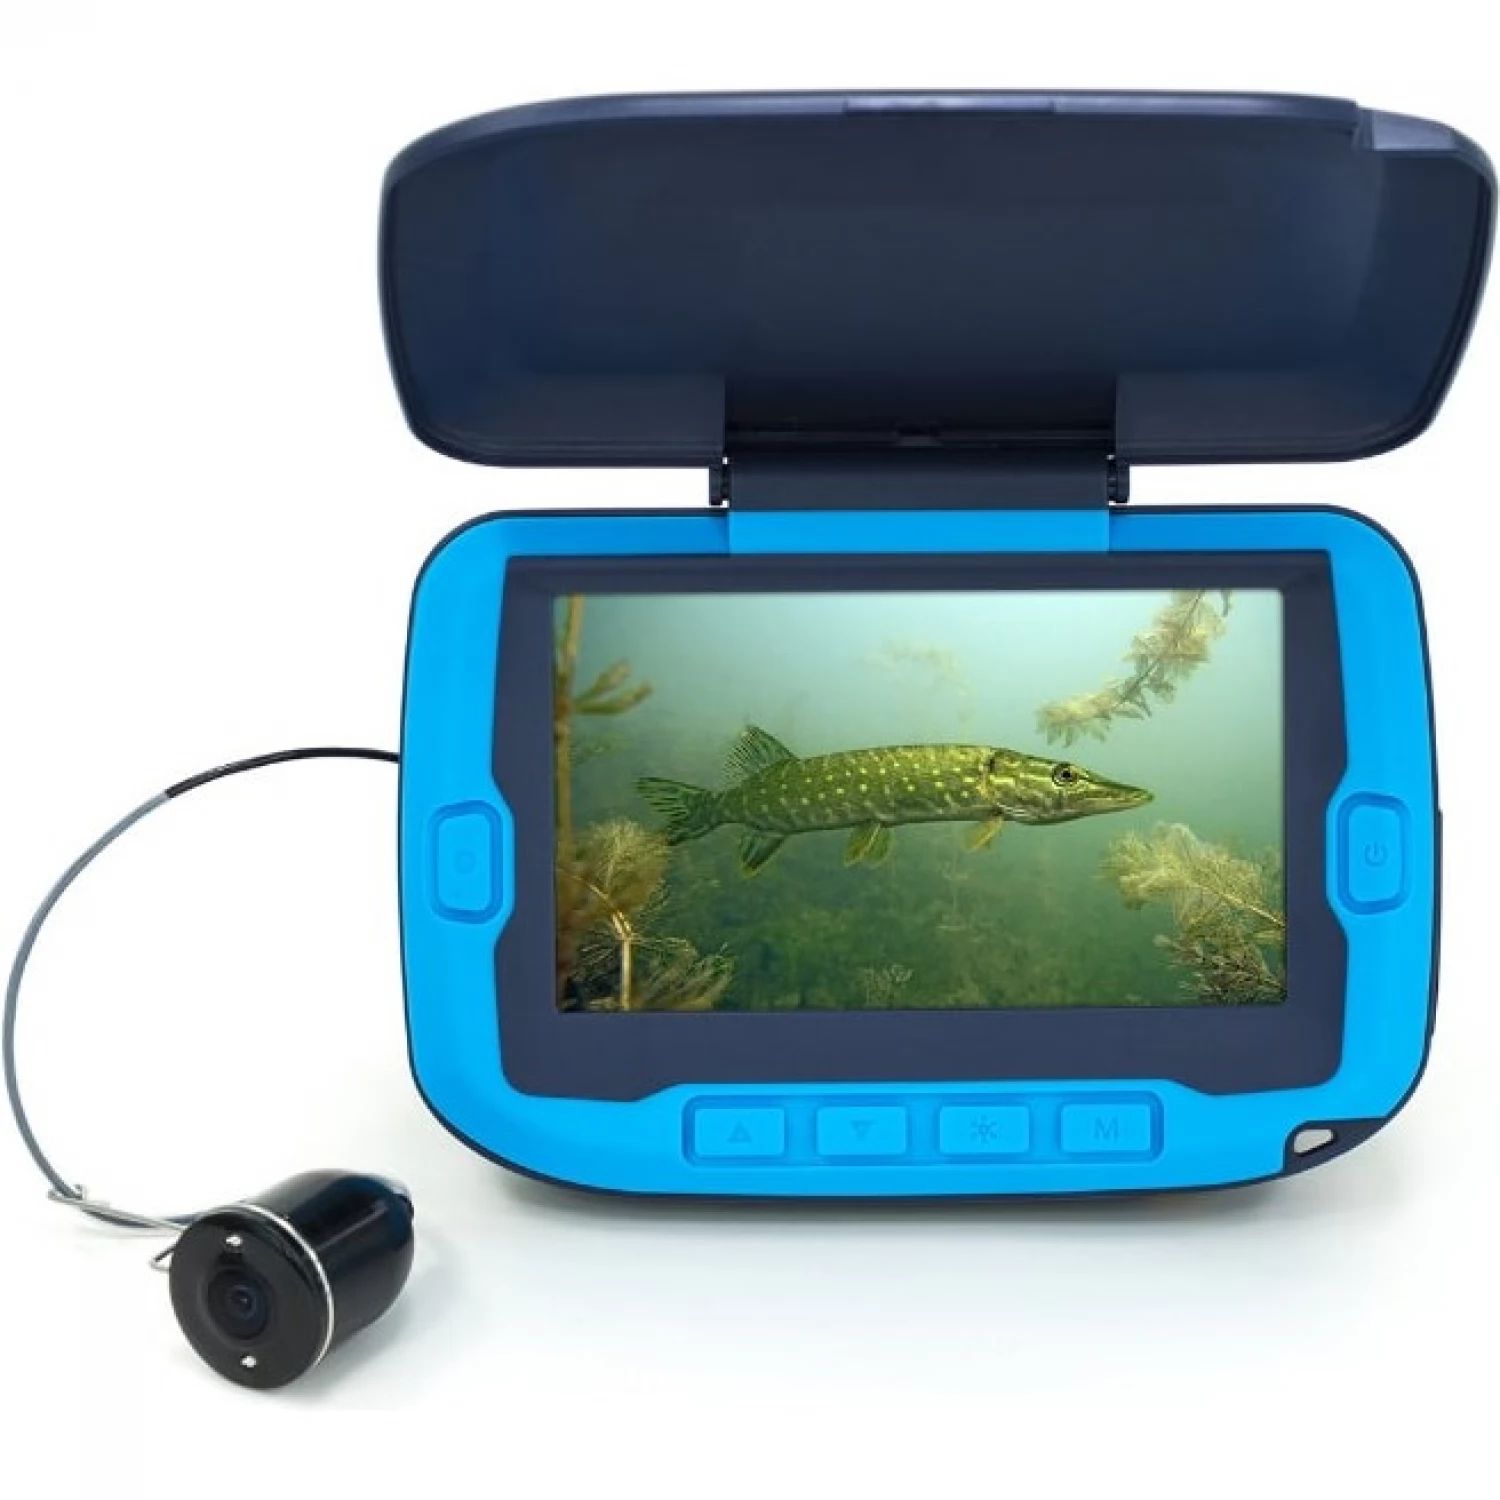 Подводная камера мурена мини. Подводная видеокамера Calypso UVS-02 Plus. Подводная видеокамера Калипсо UVS 02. Подводная видеокамера Calypso UVS-03 Plus. Камера для рыбалки Калипсо UVS-02.